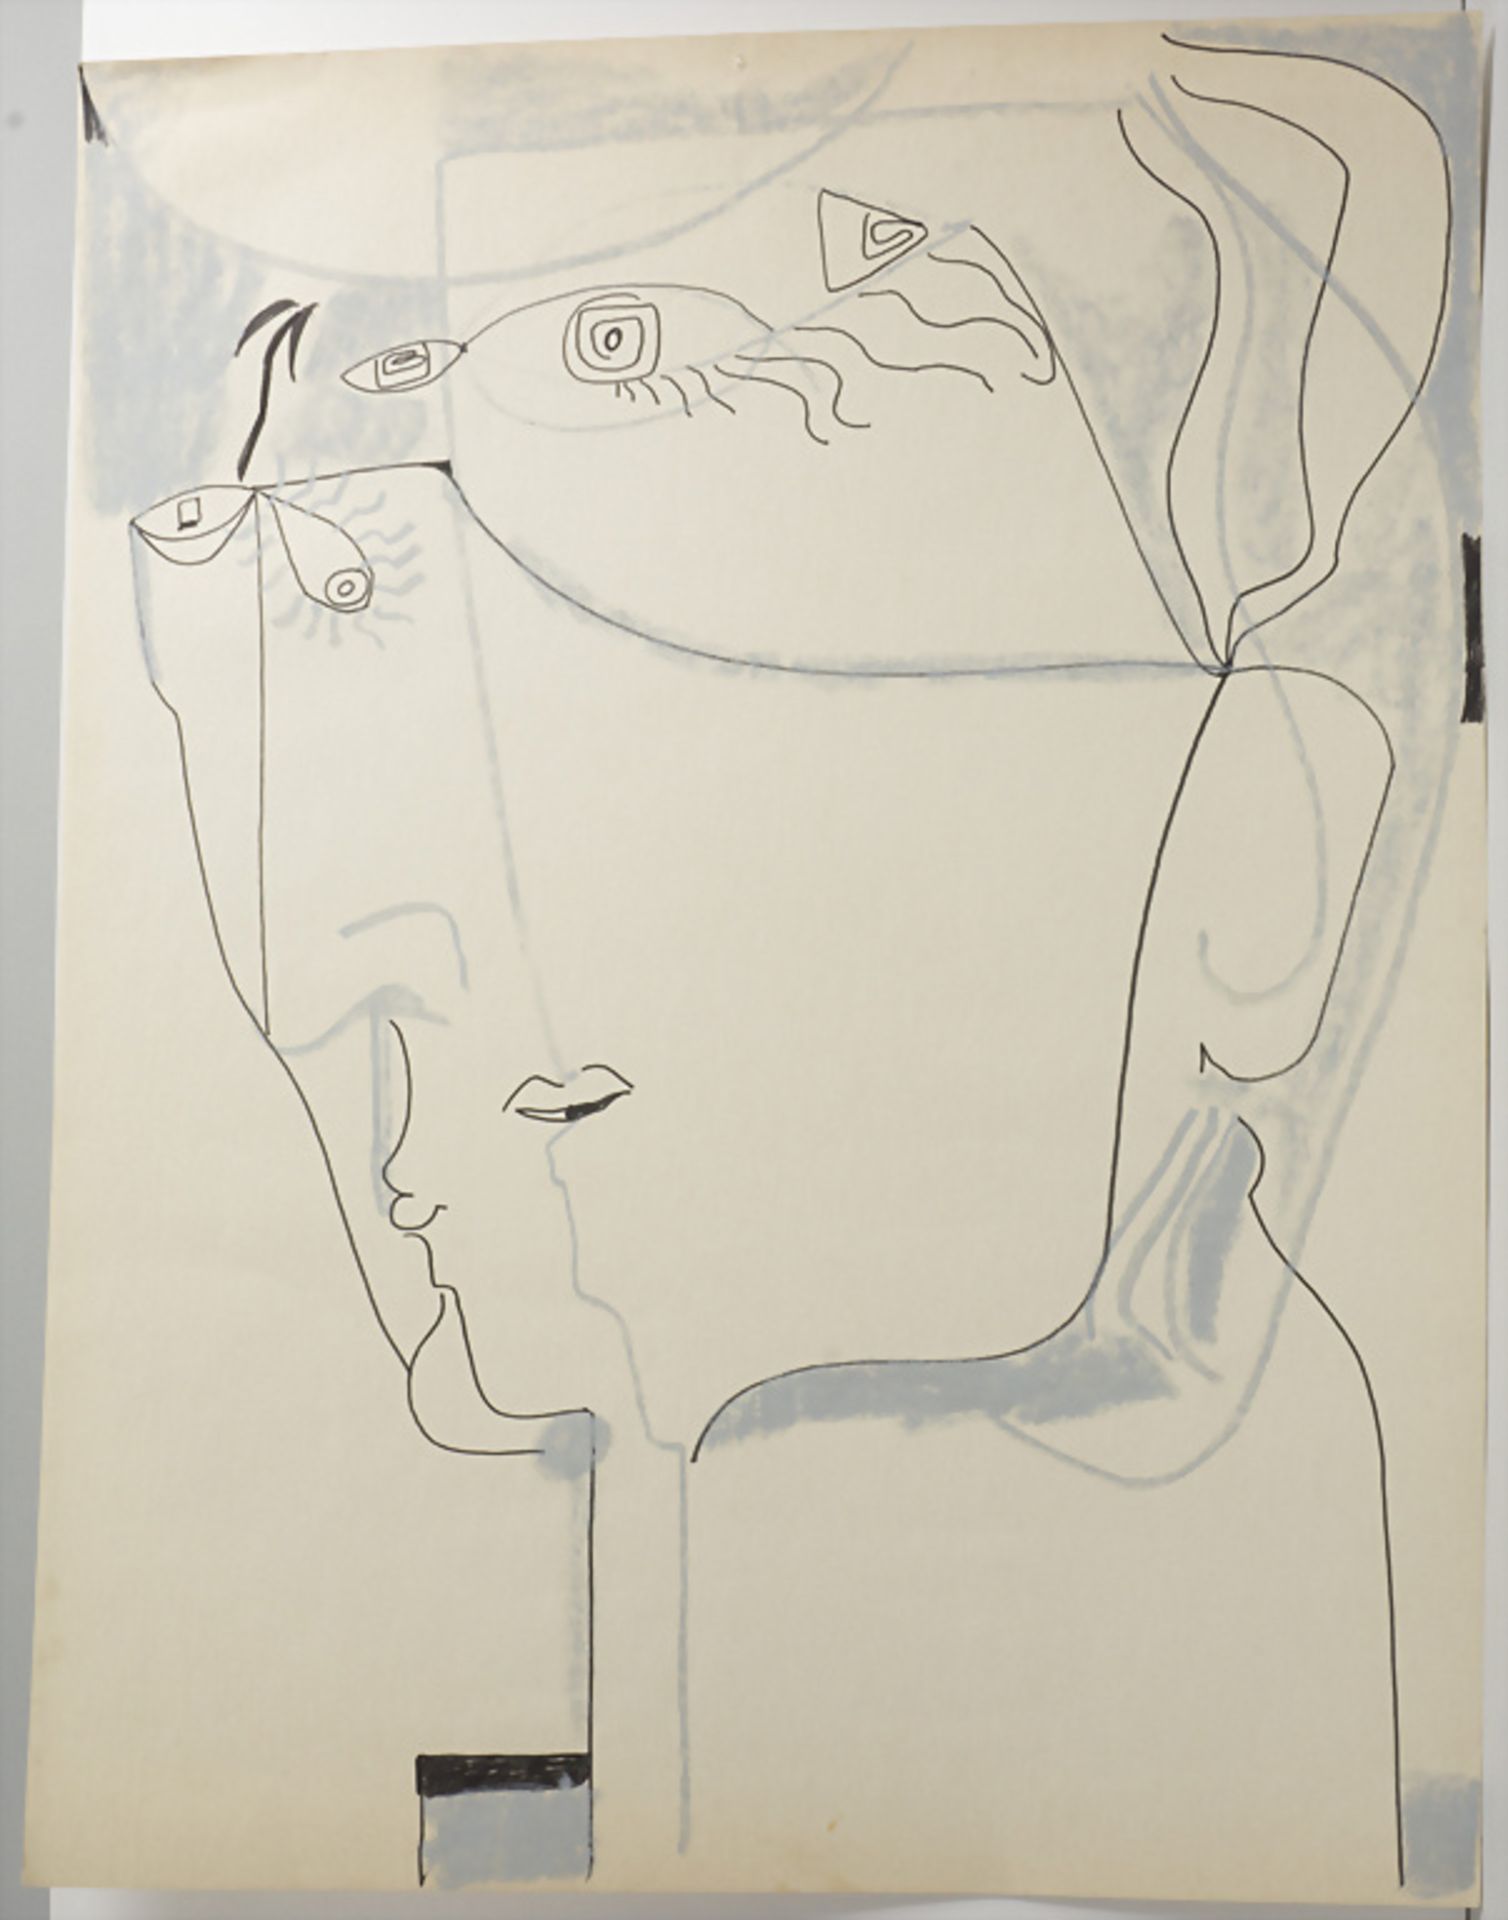 Künstler des 20. Jh., 'Abstrakte Figur' / 'An abstract figure', deutsch